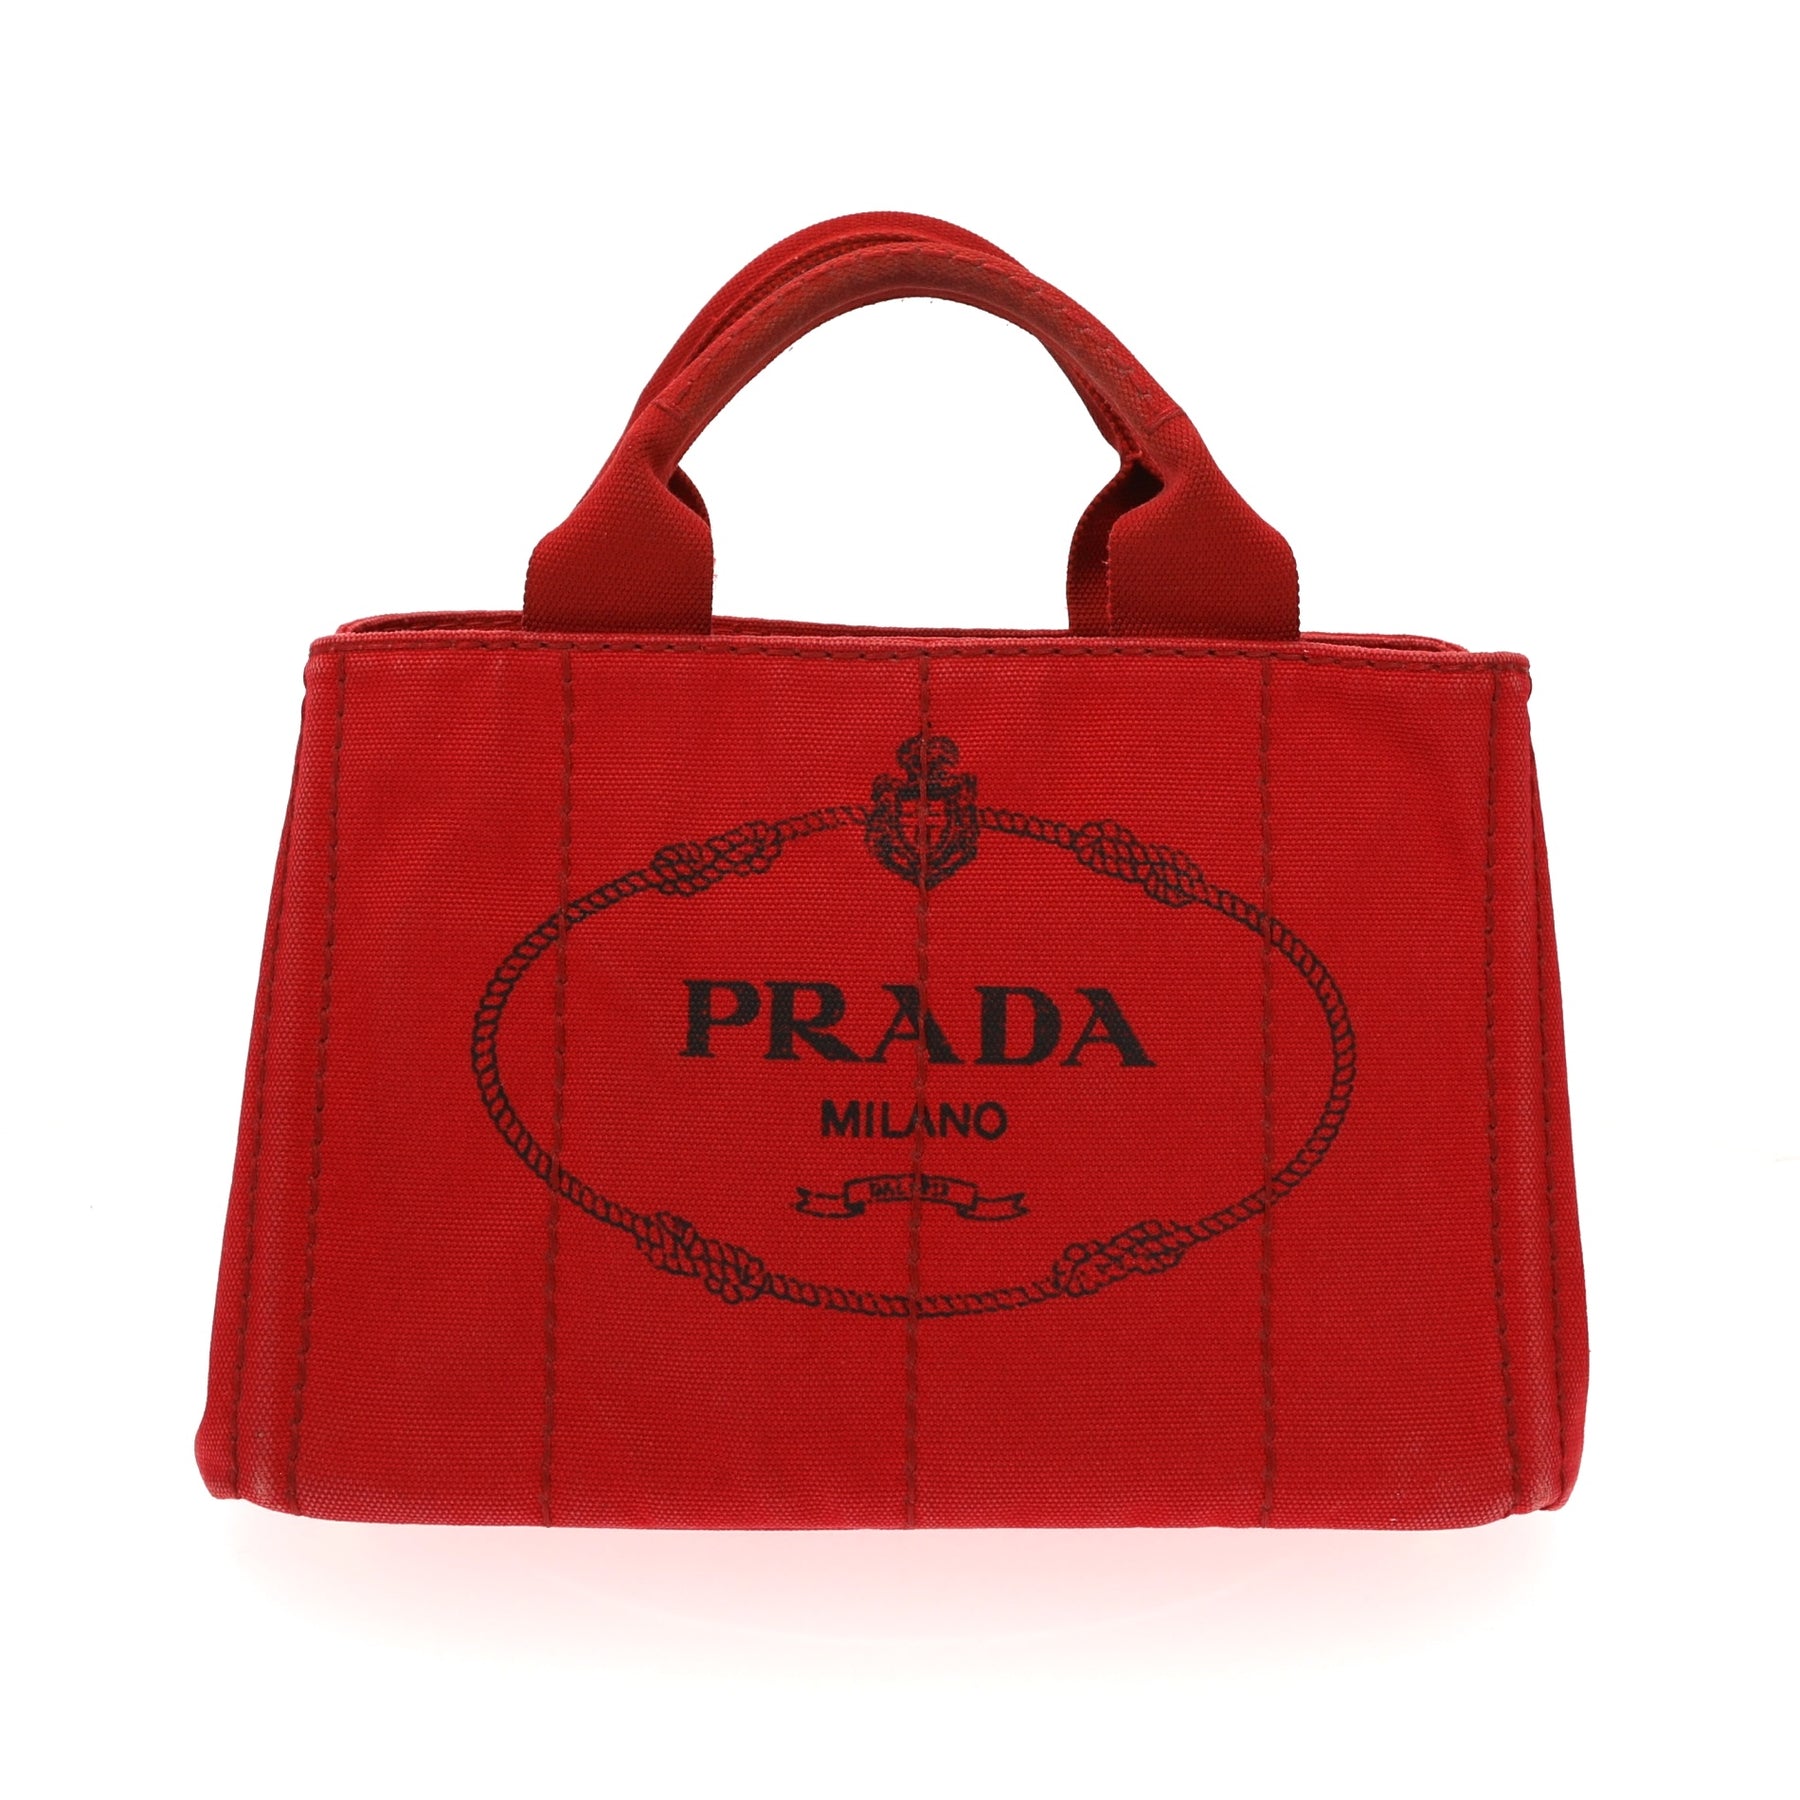 red prada bag price